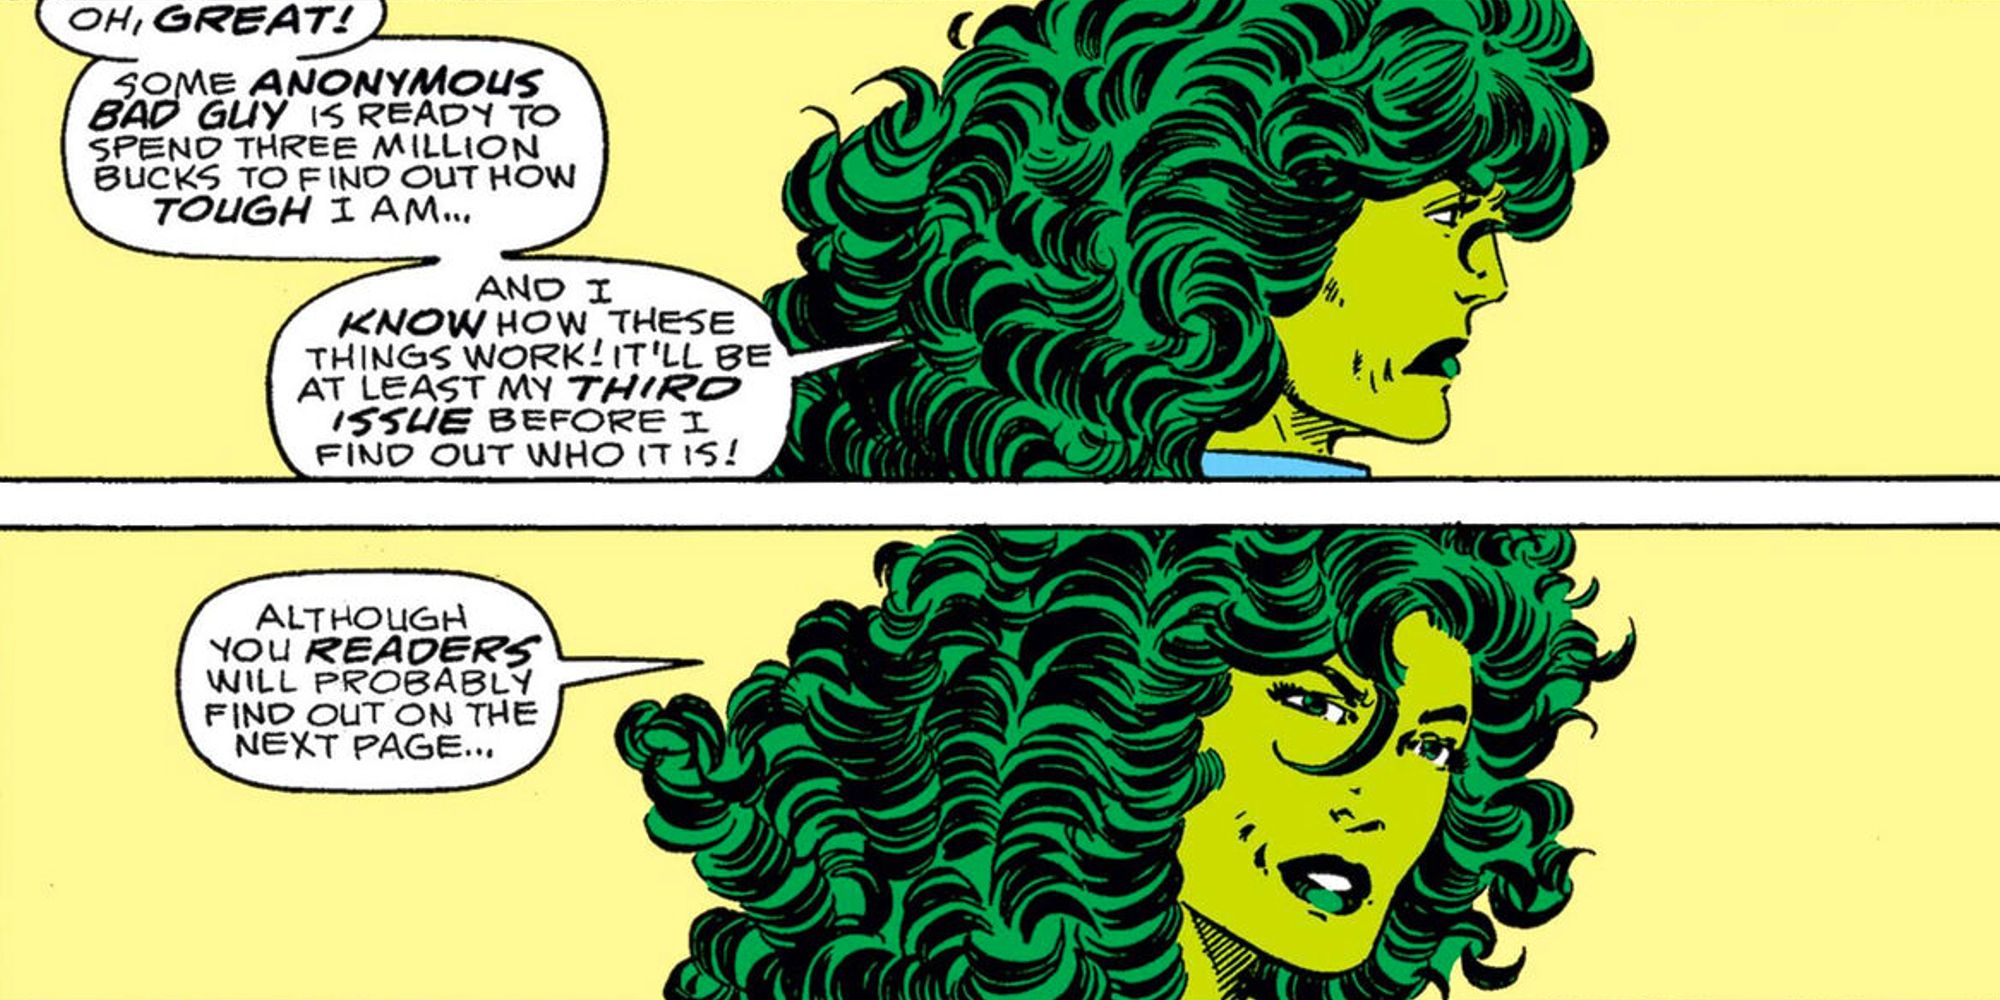 She-Hulk breaking the fourth wall in Sensational She-Hulk comics.